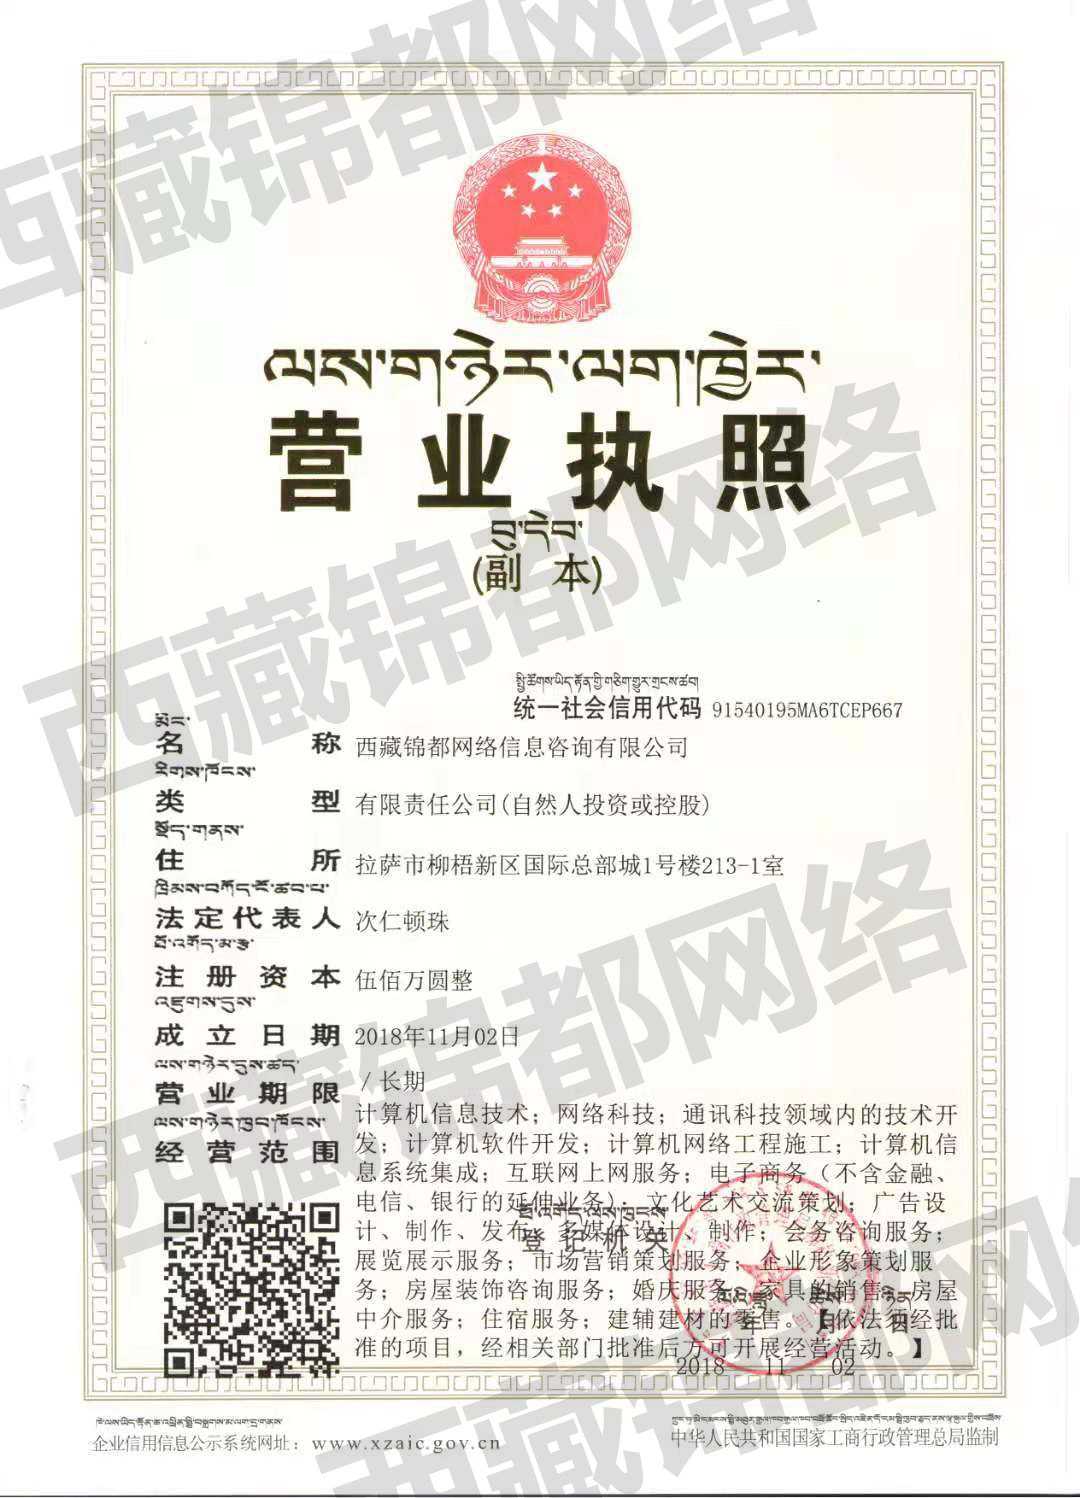 西藏锦都网络营业执照